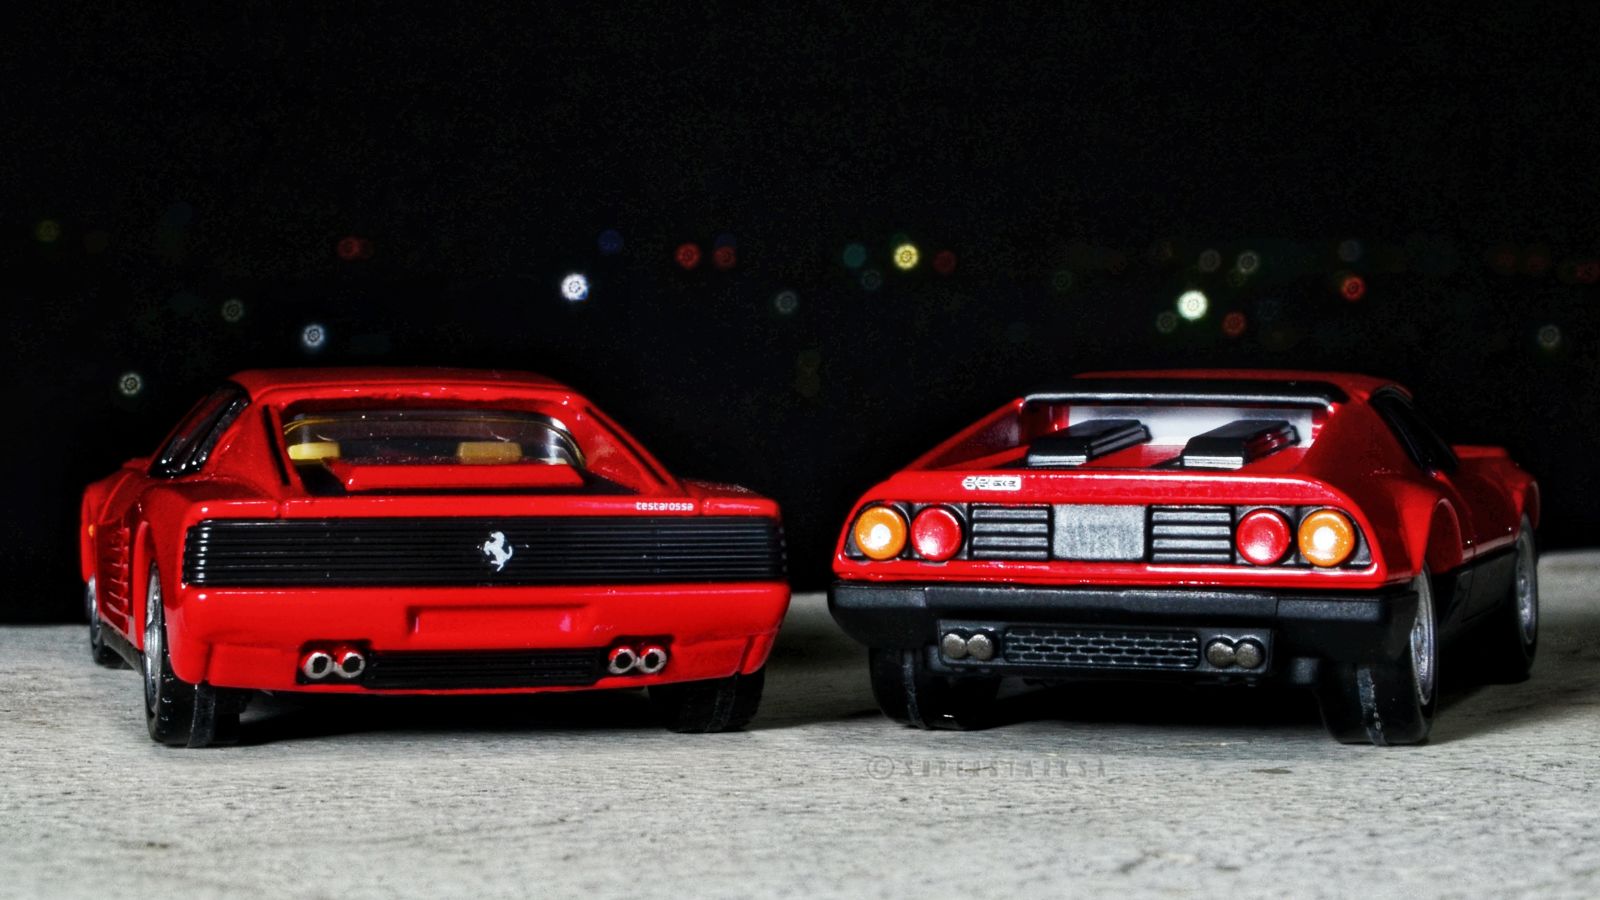 Illustration for article titled Ferrari Friday - Testarossa and the 512 Berlinetta Boxerem/em